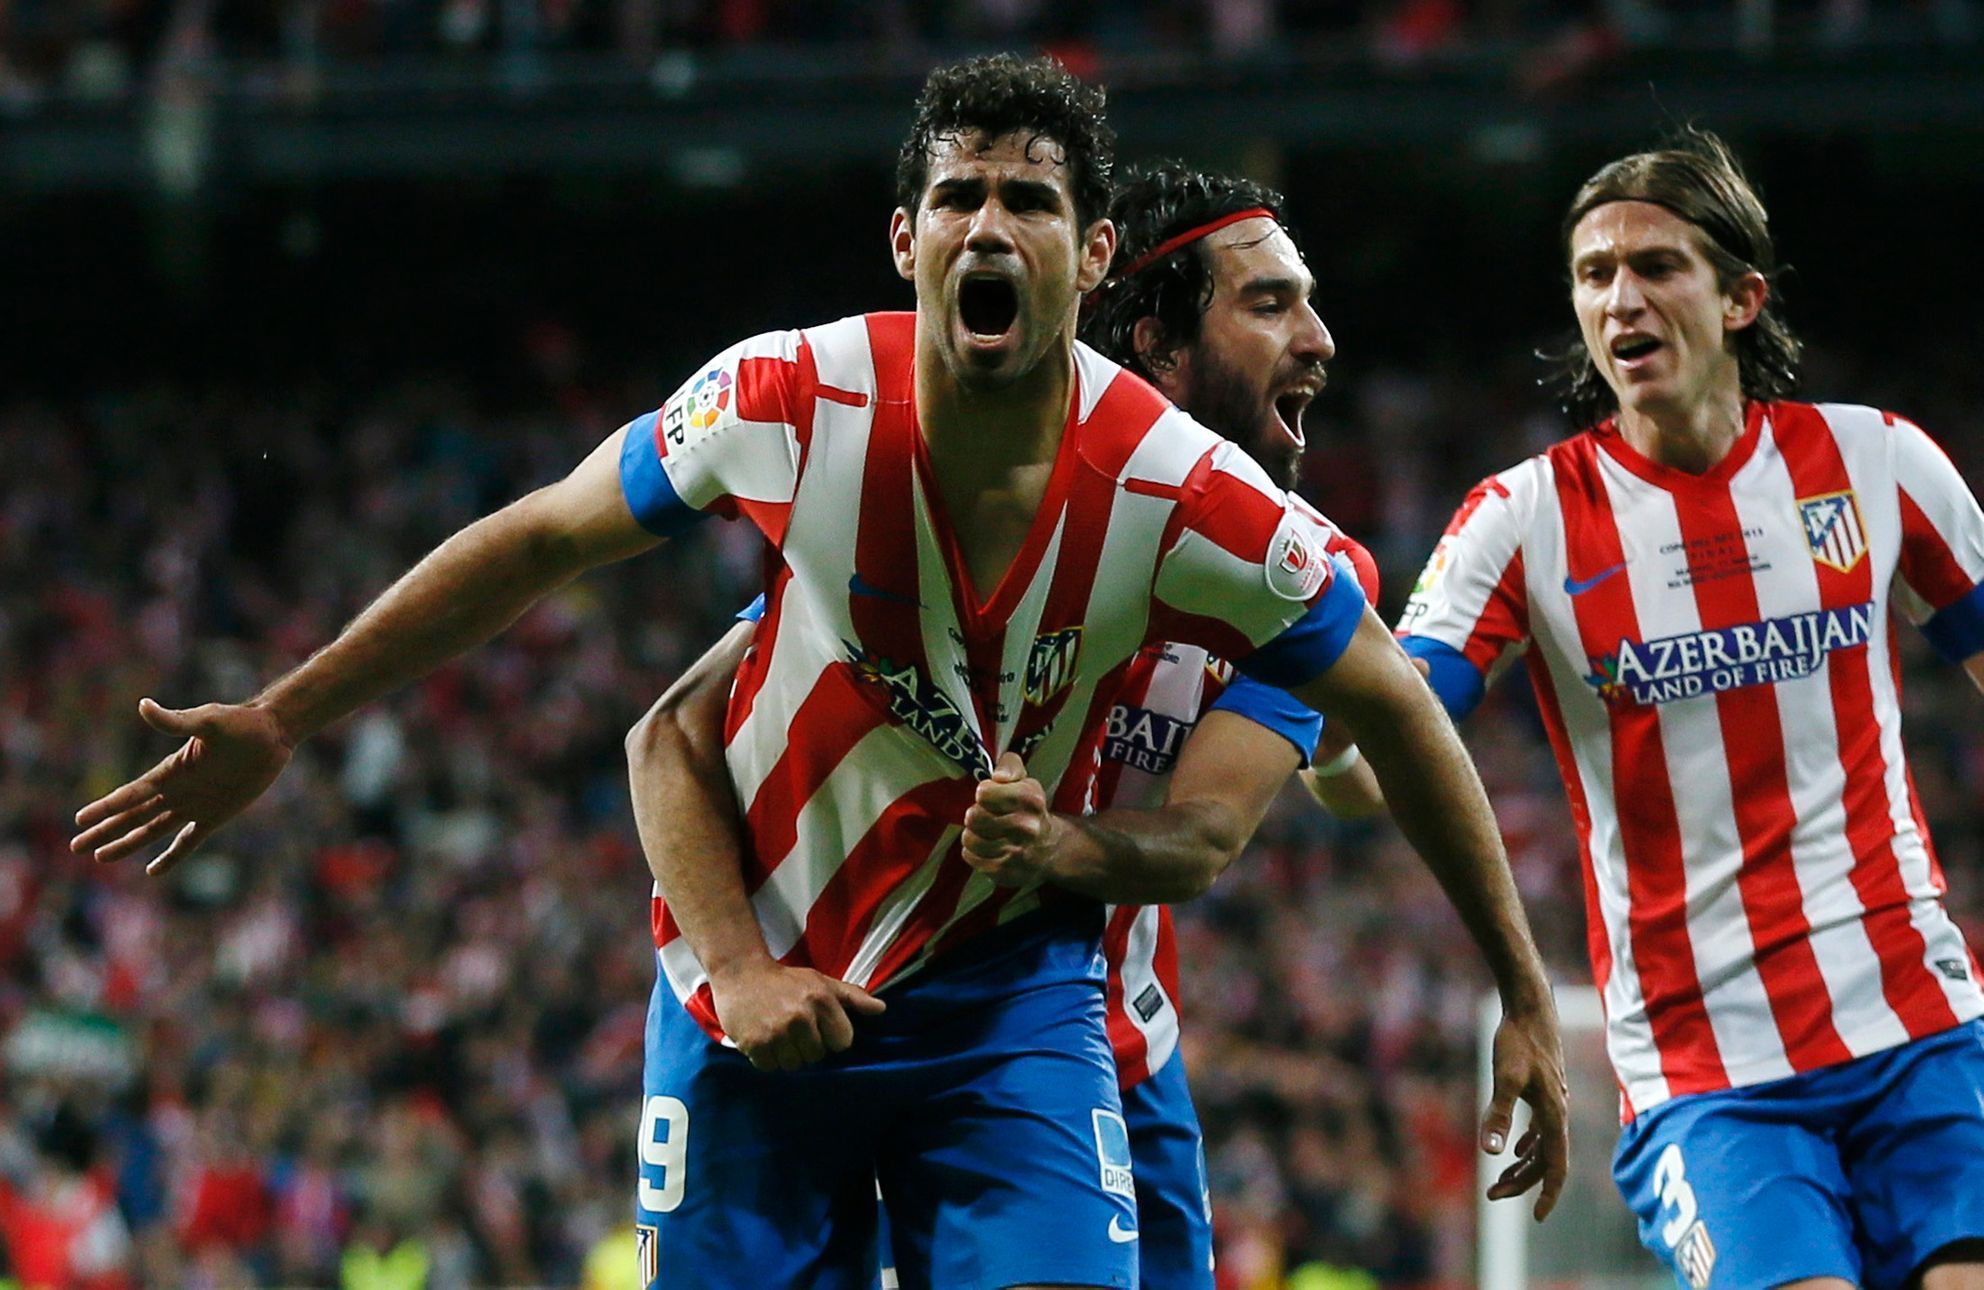 Diego Costa a hráči Atlética Madrid slaví gól ve finále španělského poháru